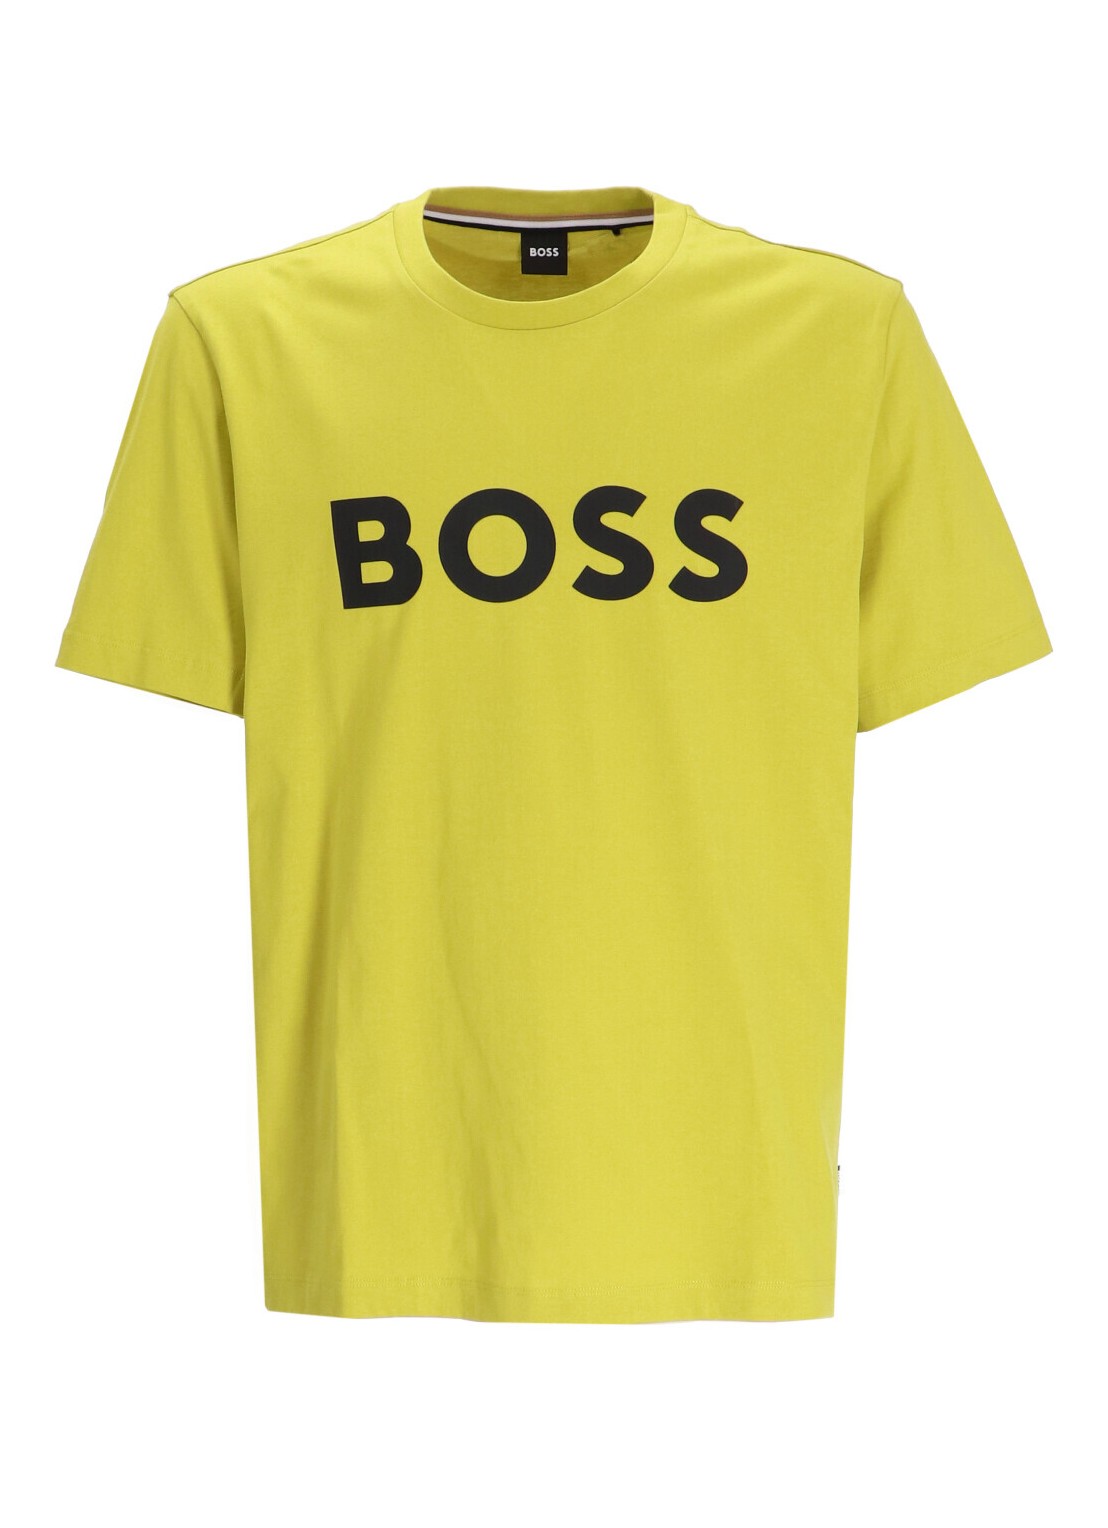 Camiseta boss t-shirt man tiburt 354 50495742 321 talla XXL
 